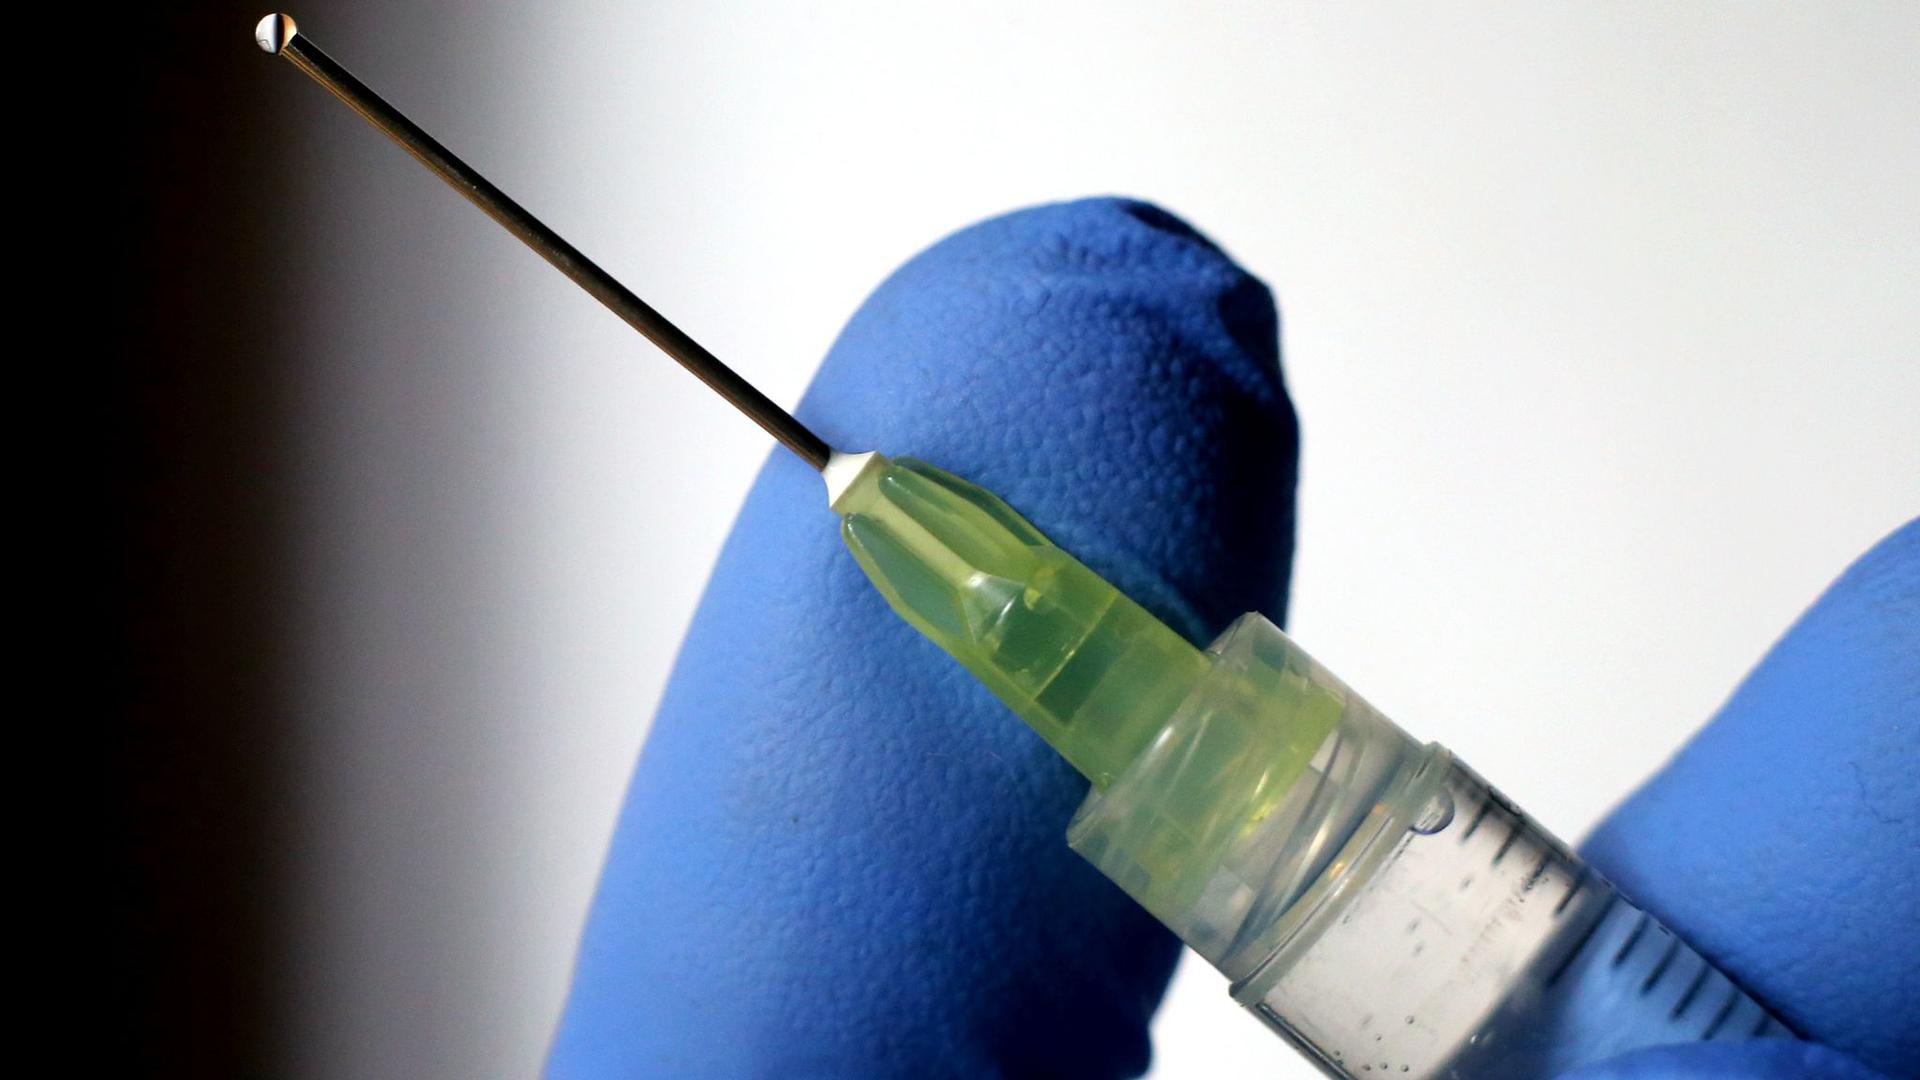 Die Impfungen gegen das Coronavirus sollen in Deutschland noch an diesem Wochenende starten.